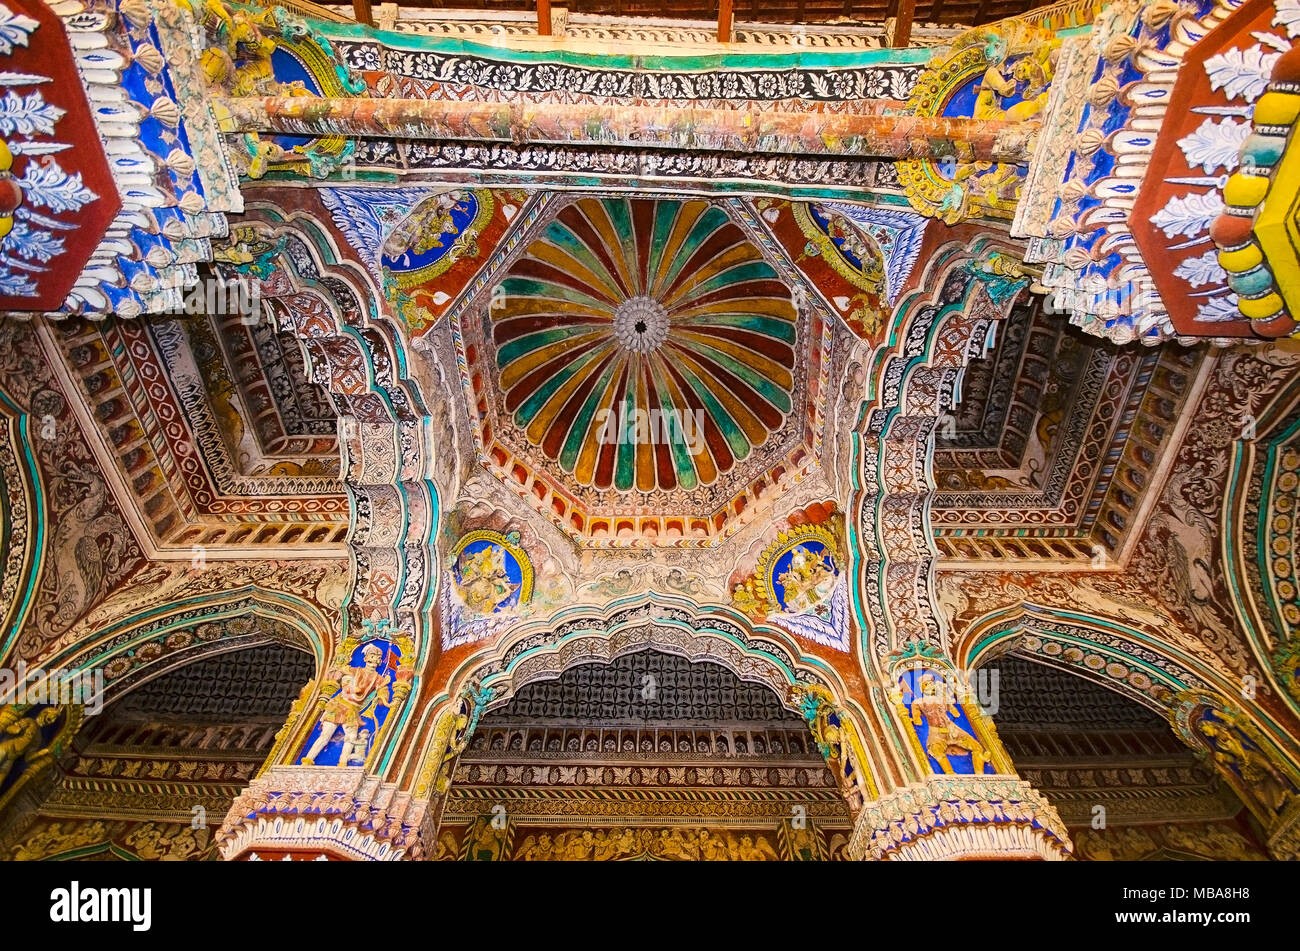 Innenraum des Durbar Hall, Thanjavur Maratha Palace, Thanjavur, Tamil Nadu, Indien. Vor Ort als Wohnsitz der Familie Bhonsle, die über Th ausgeschlossen bekannt Stockfoto